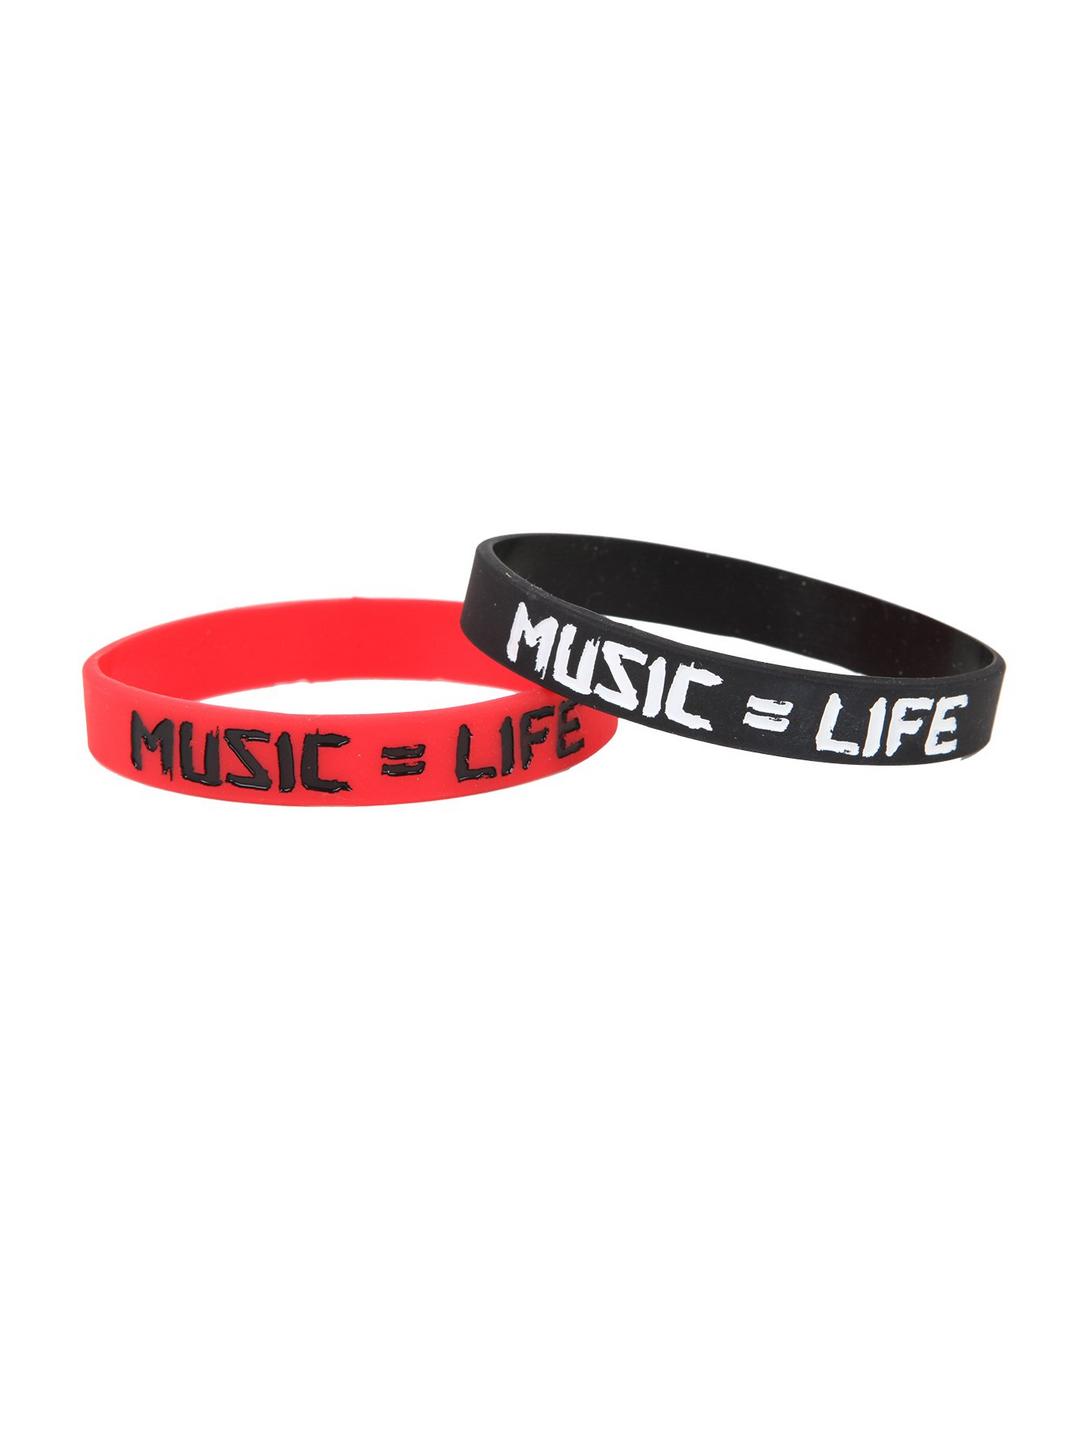 Music = Life Rubber Bracelet 2 Pack, , hi-res